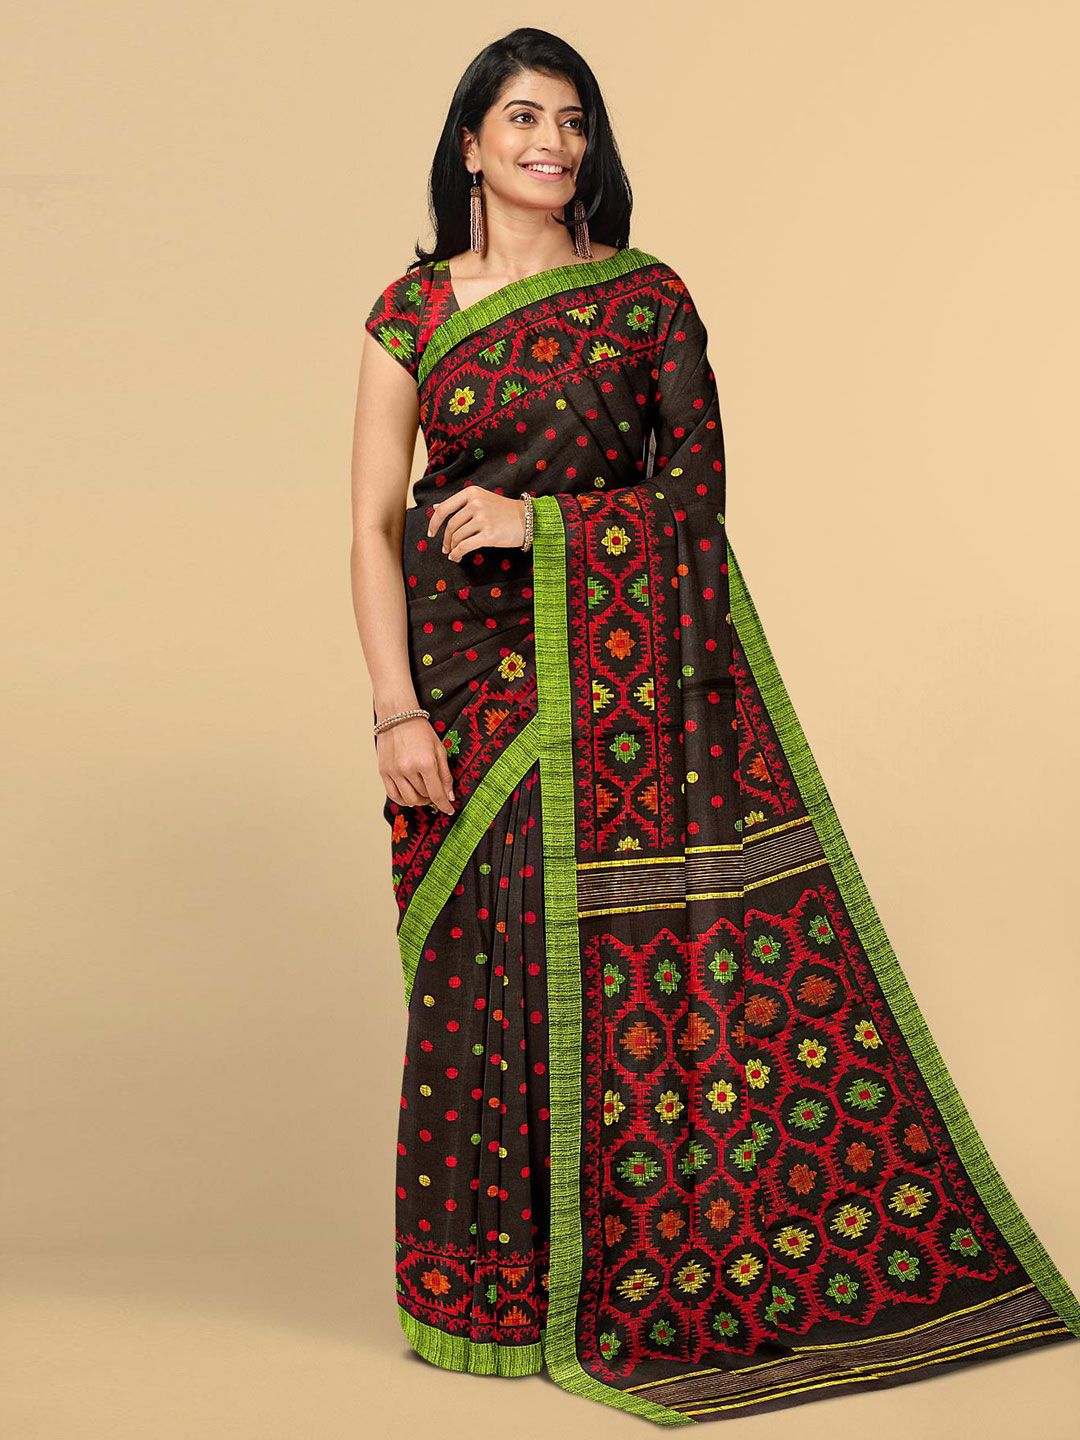 Kalamandir Women Brown & Red Printed Jute Silk Saree Price in India